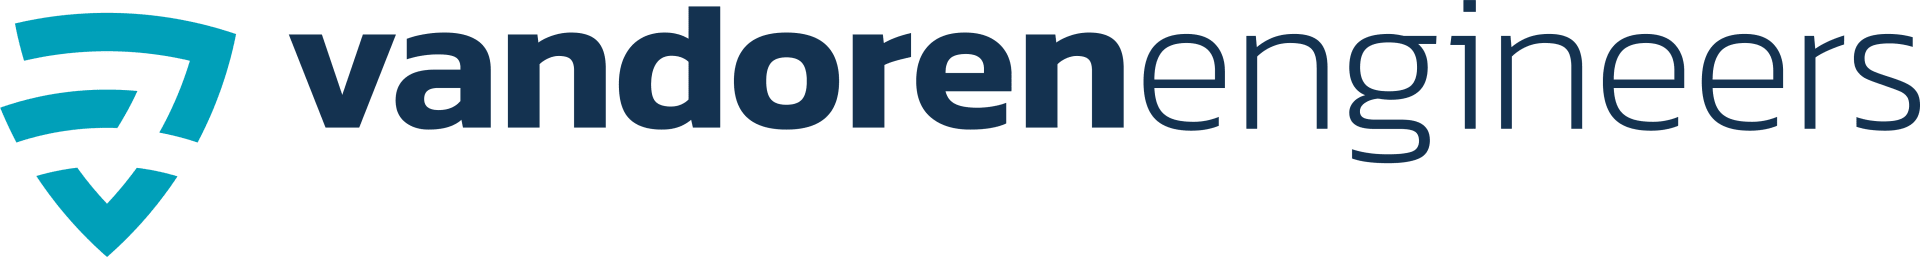 Van Doren Engineers logo